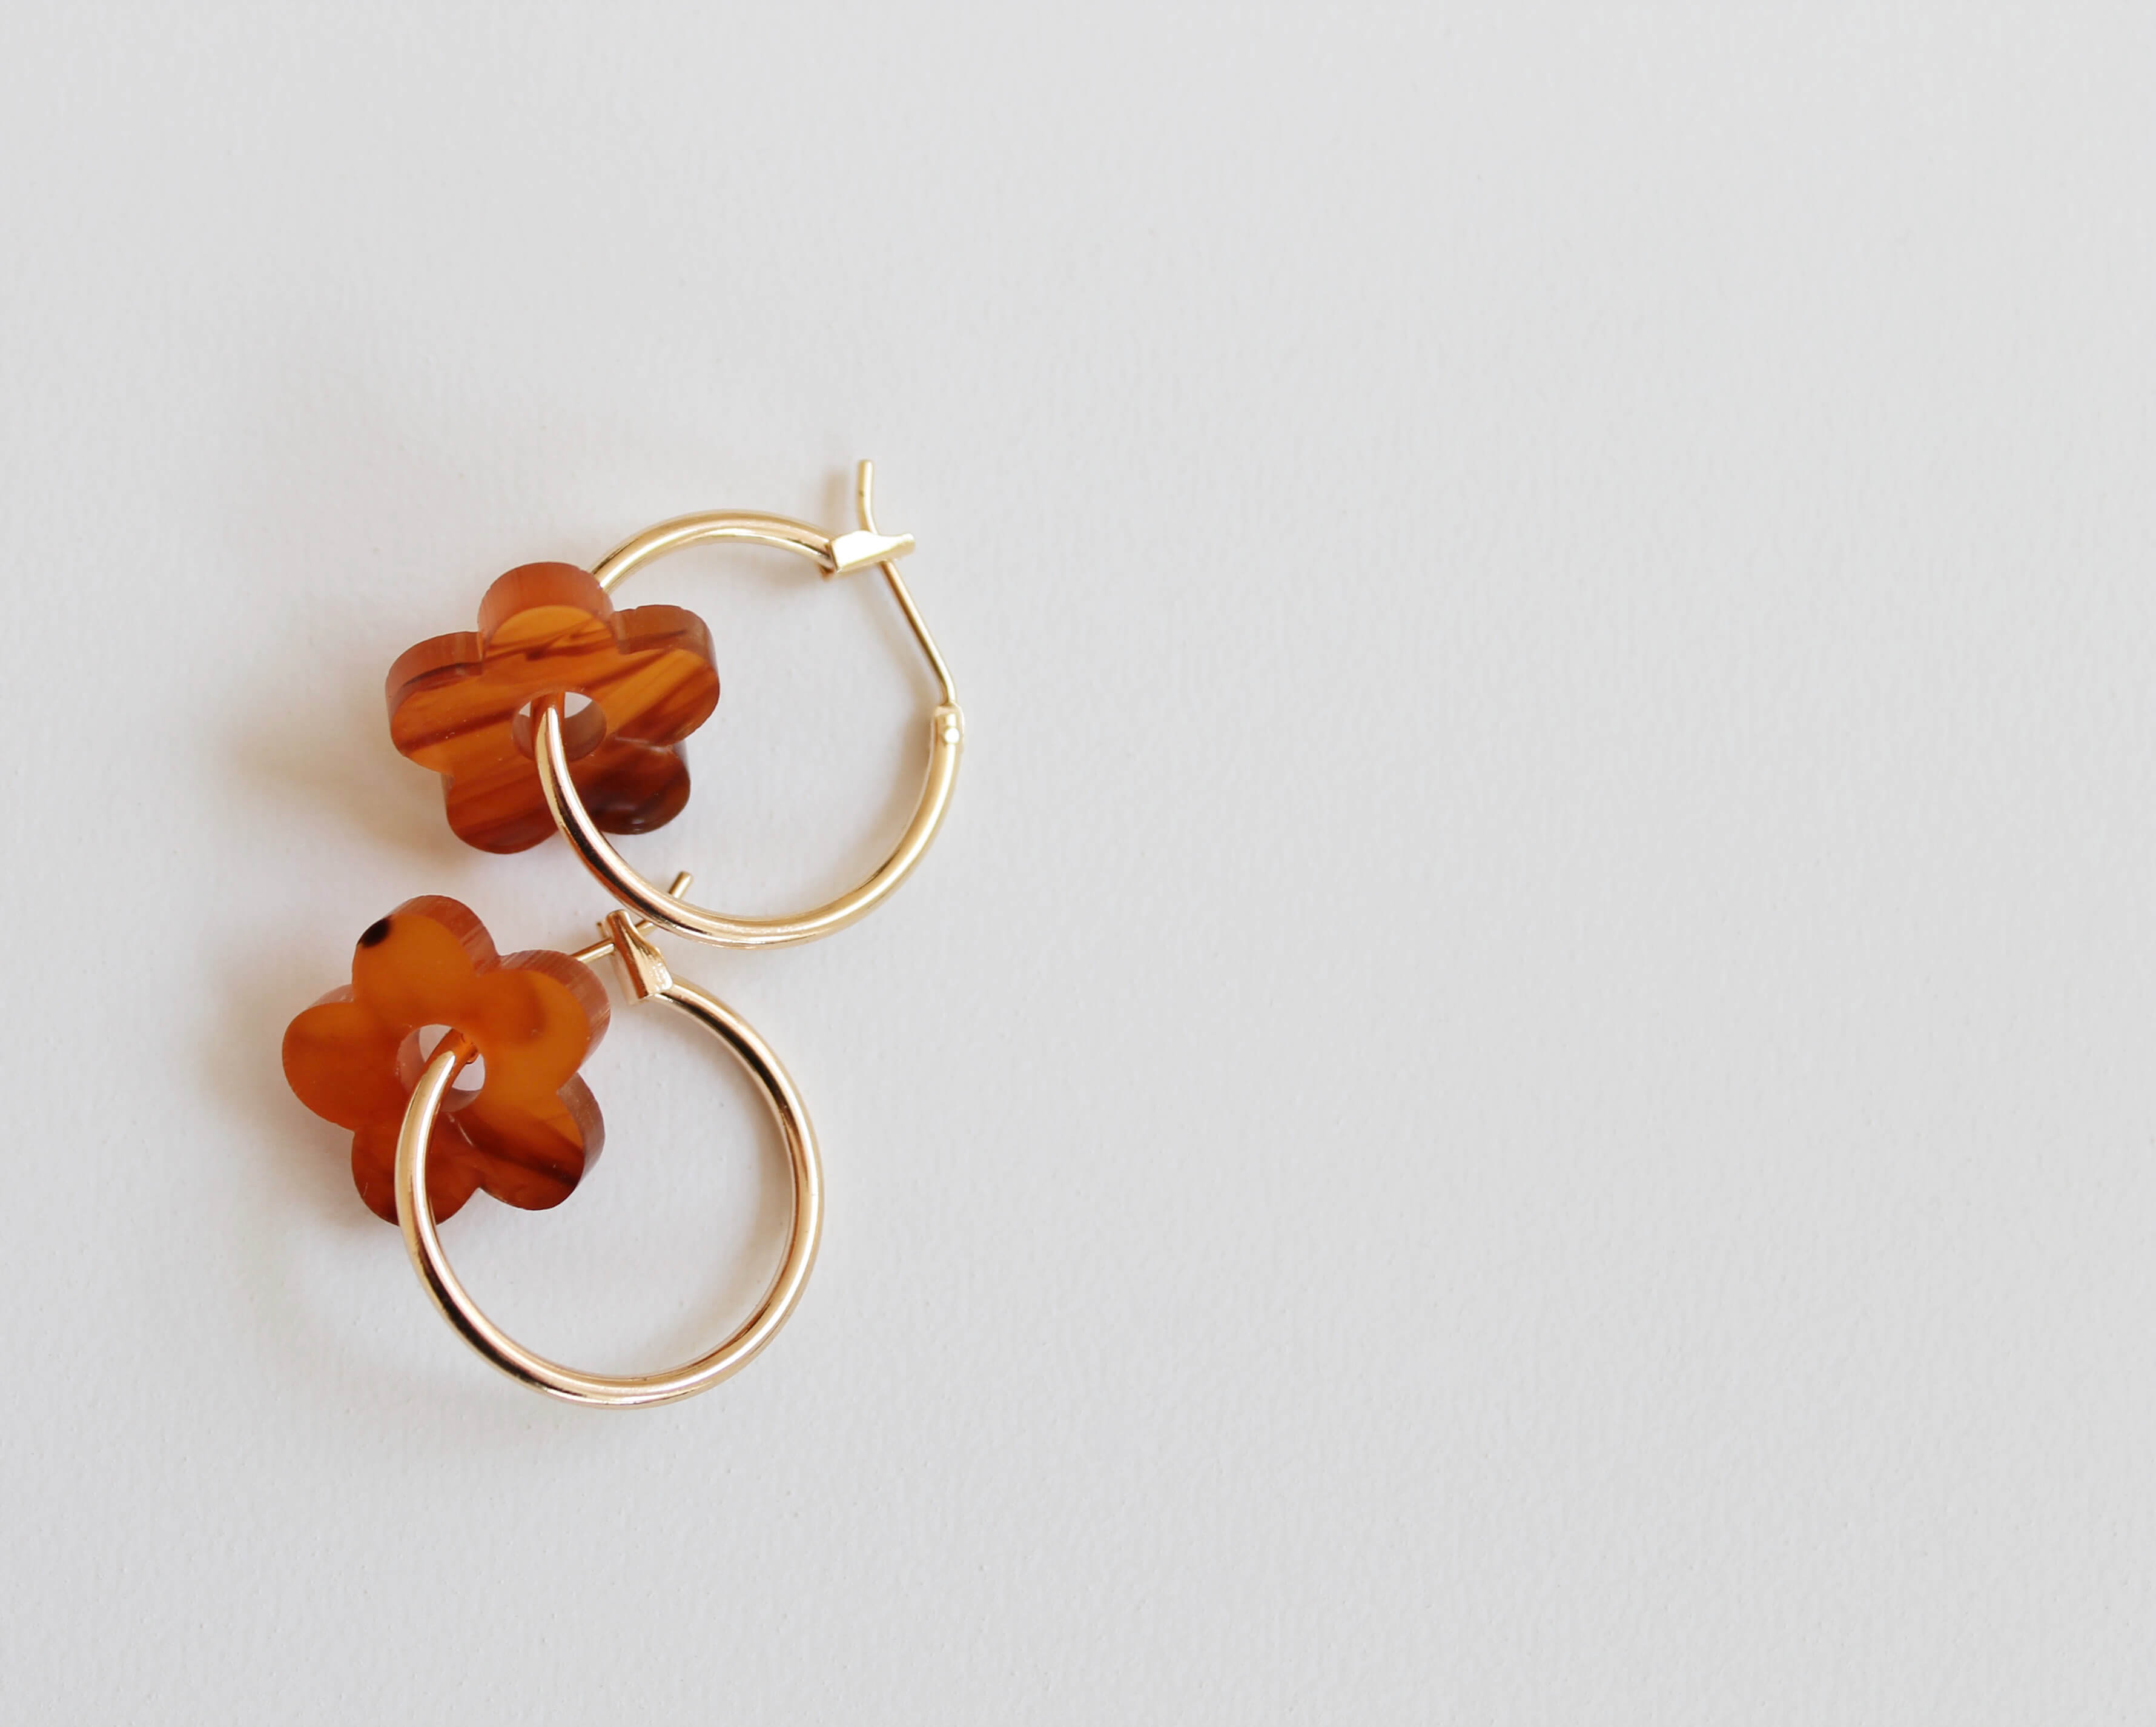 Flower Hoop Earrings | Tortoiseshell | Perspex & Gold Plate | by Jules & Clem - Lifestory